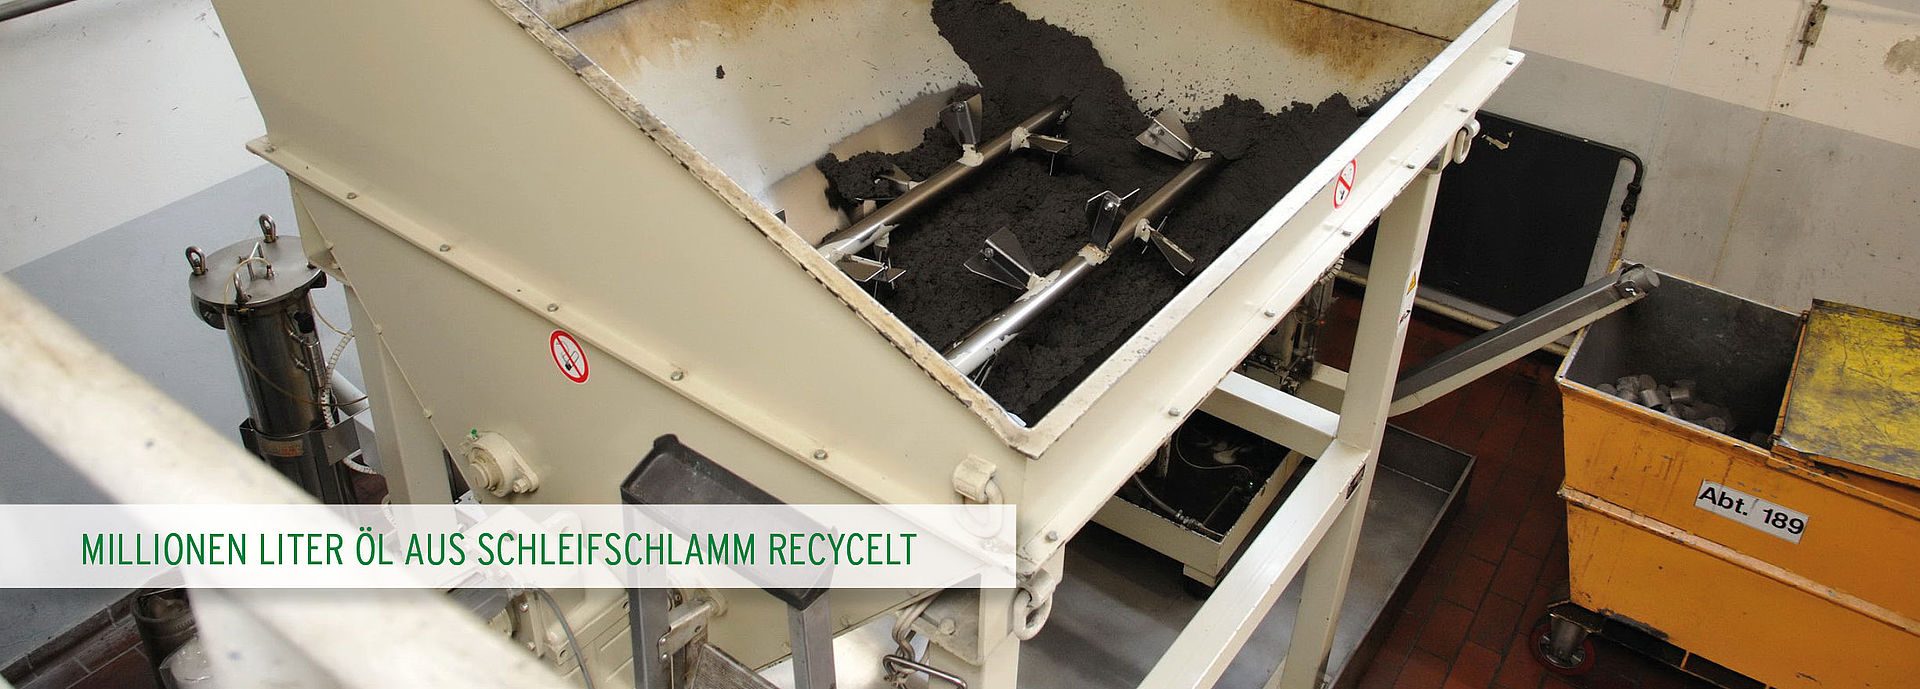 RUF Brikettiersysteme: Schleifschlamm Recycling